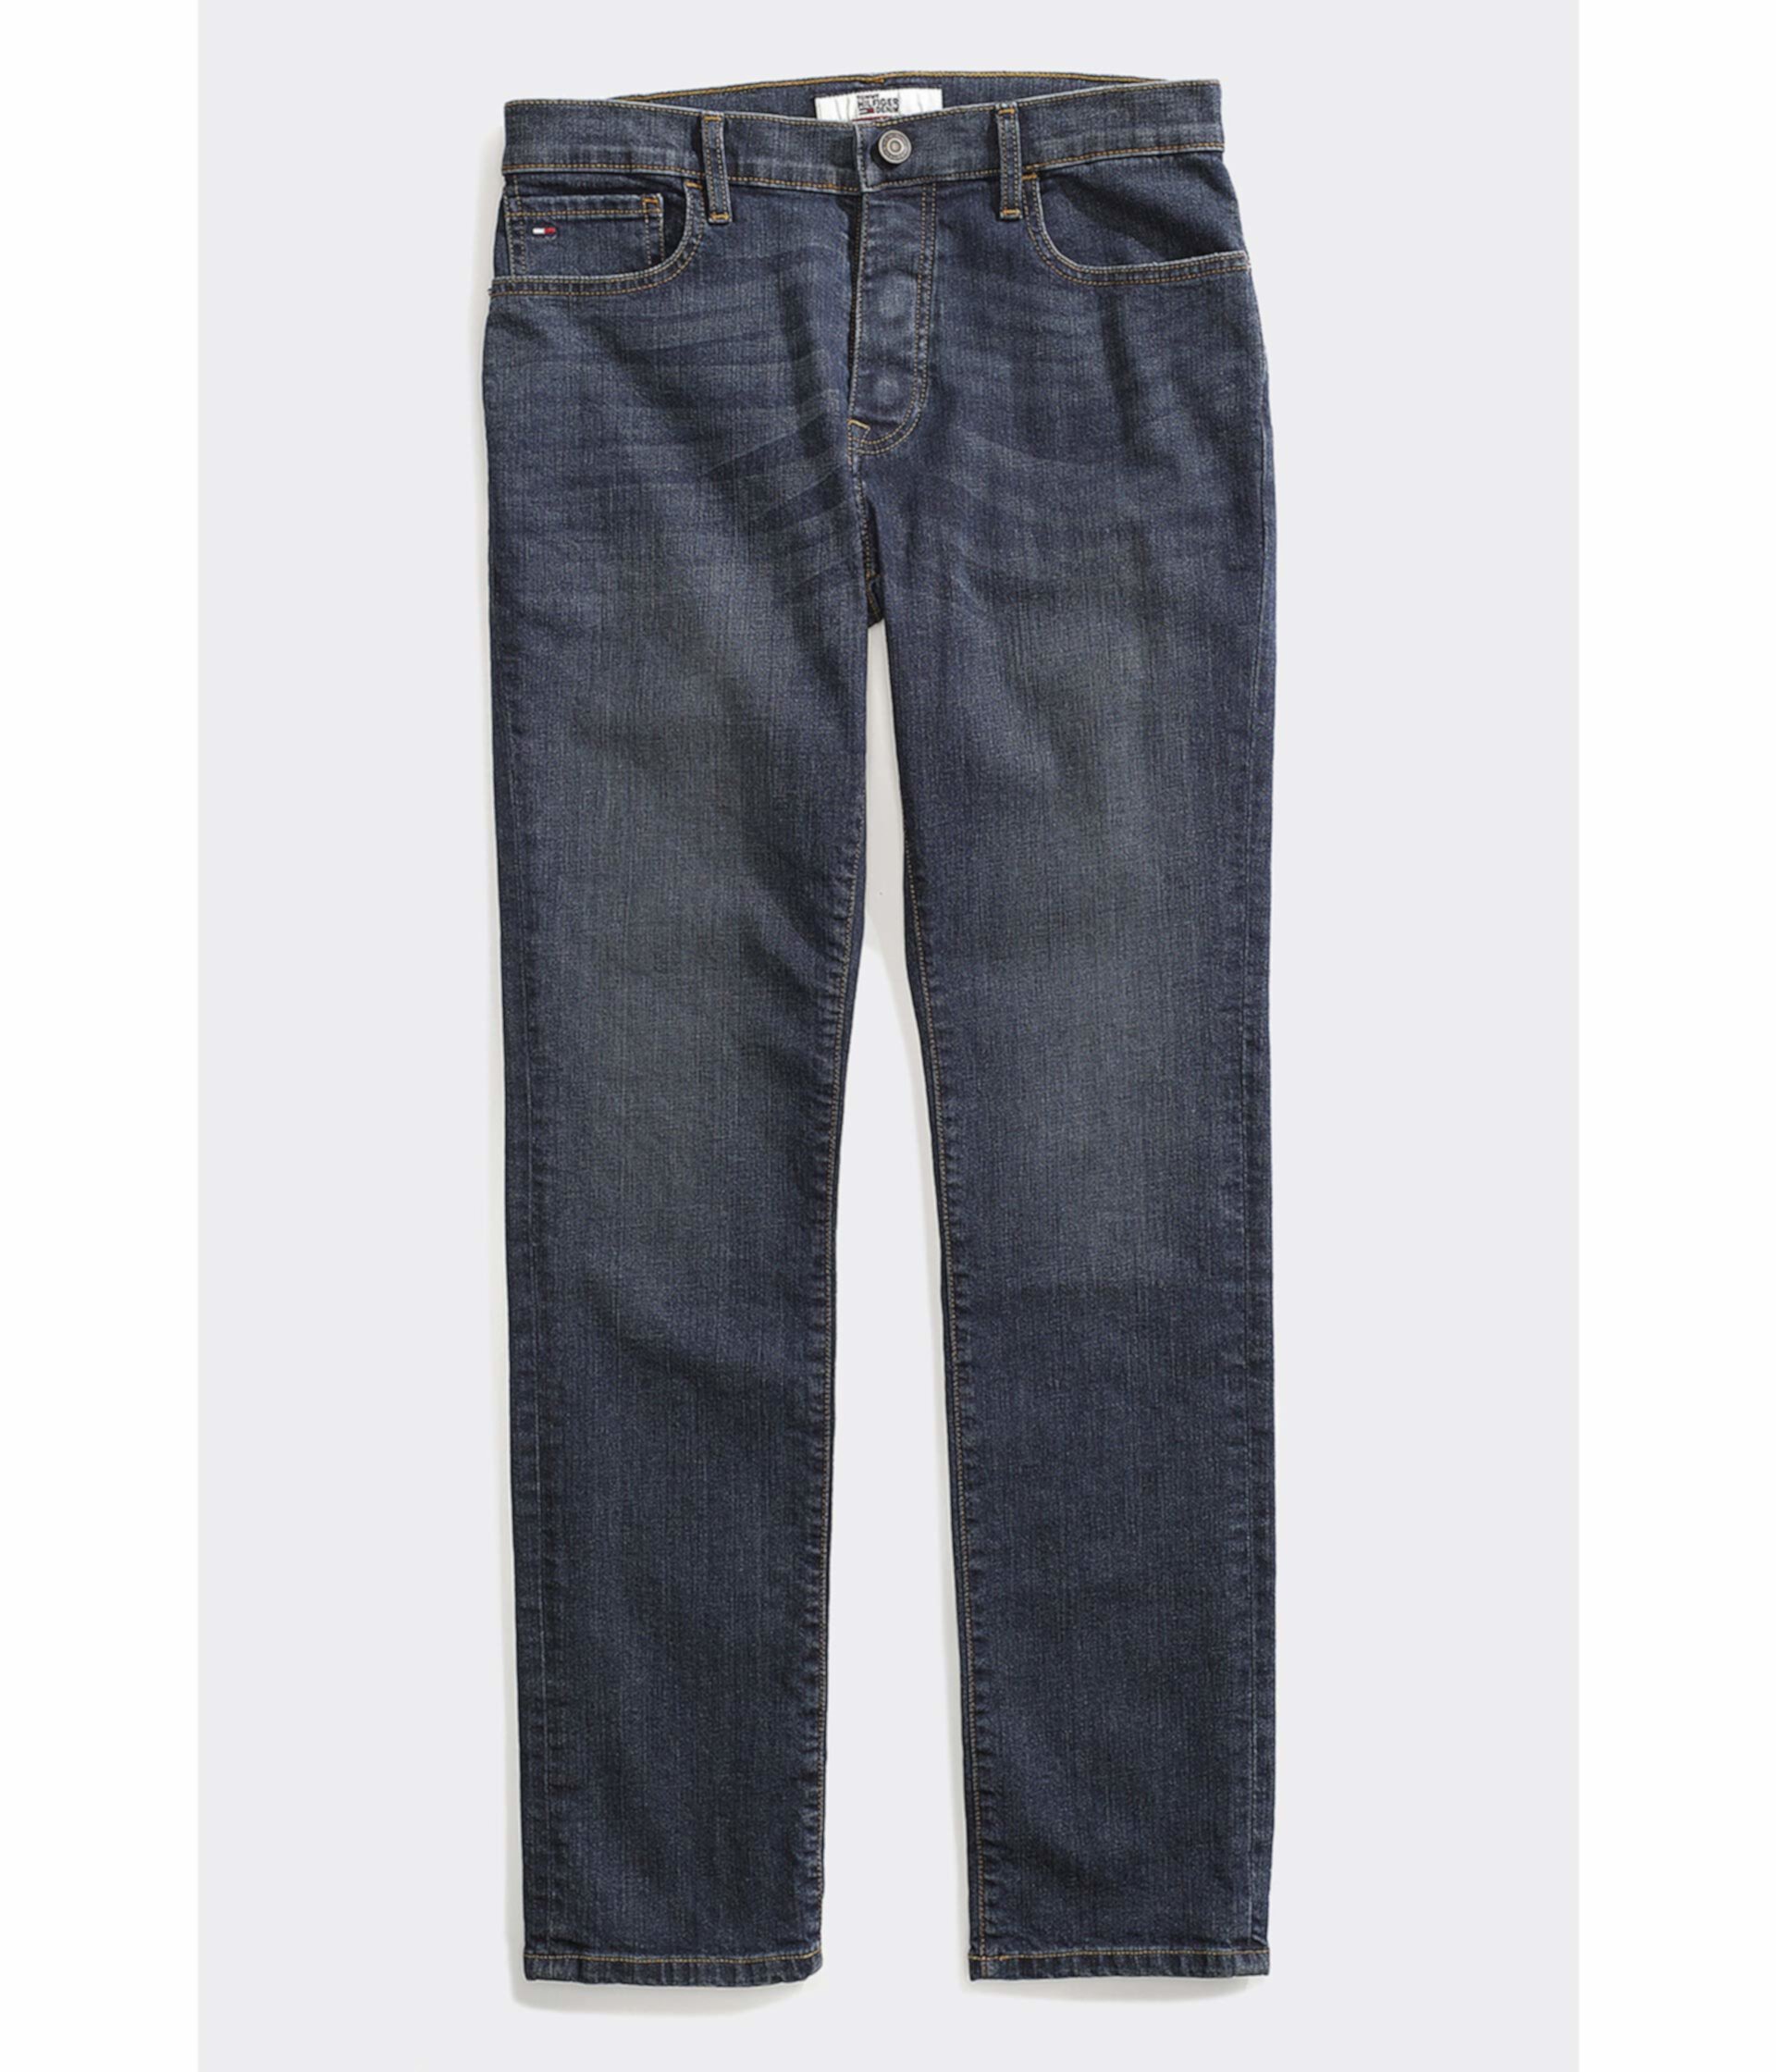 Регулируемые джинсы с талией Tommy Hilfiger Adaptive